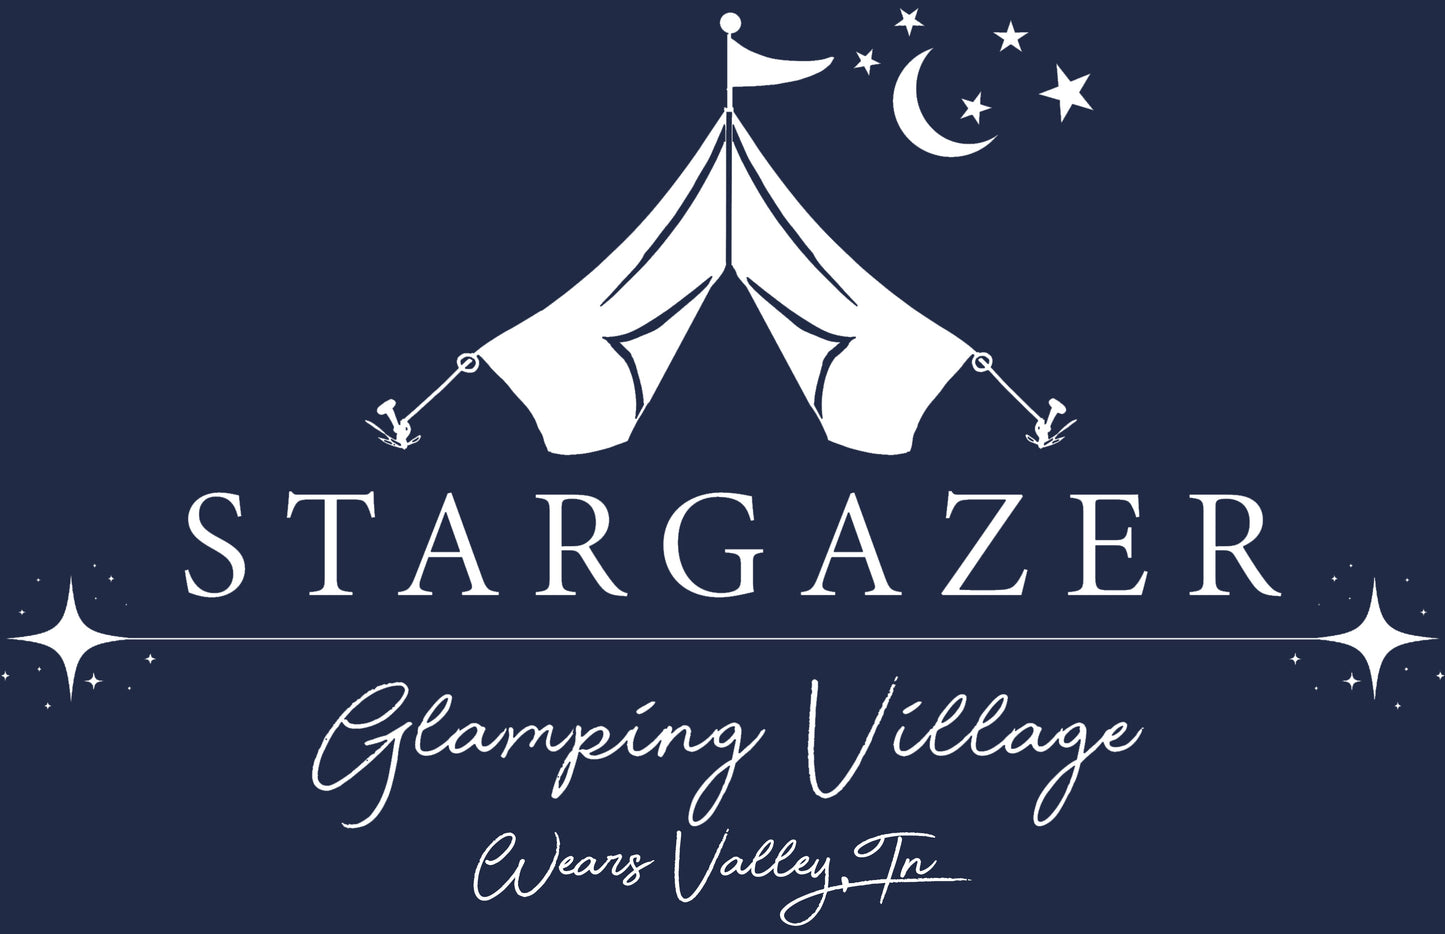 Stargazer Glamping Village